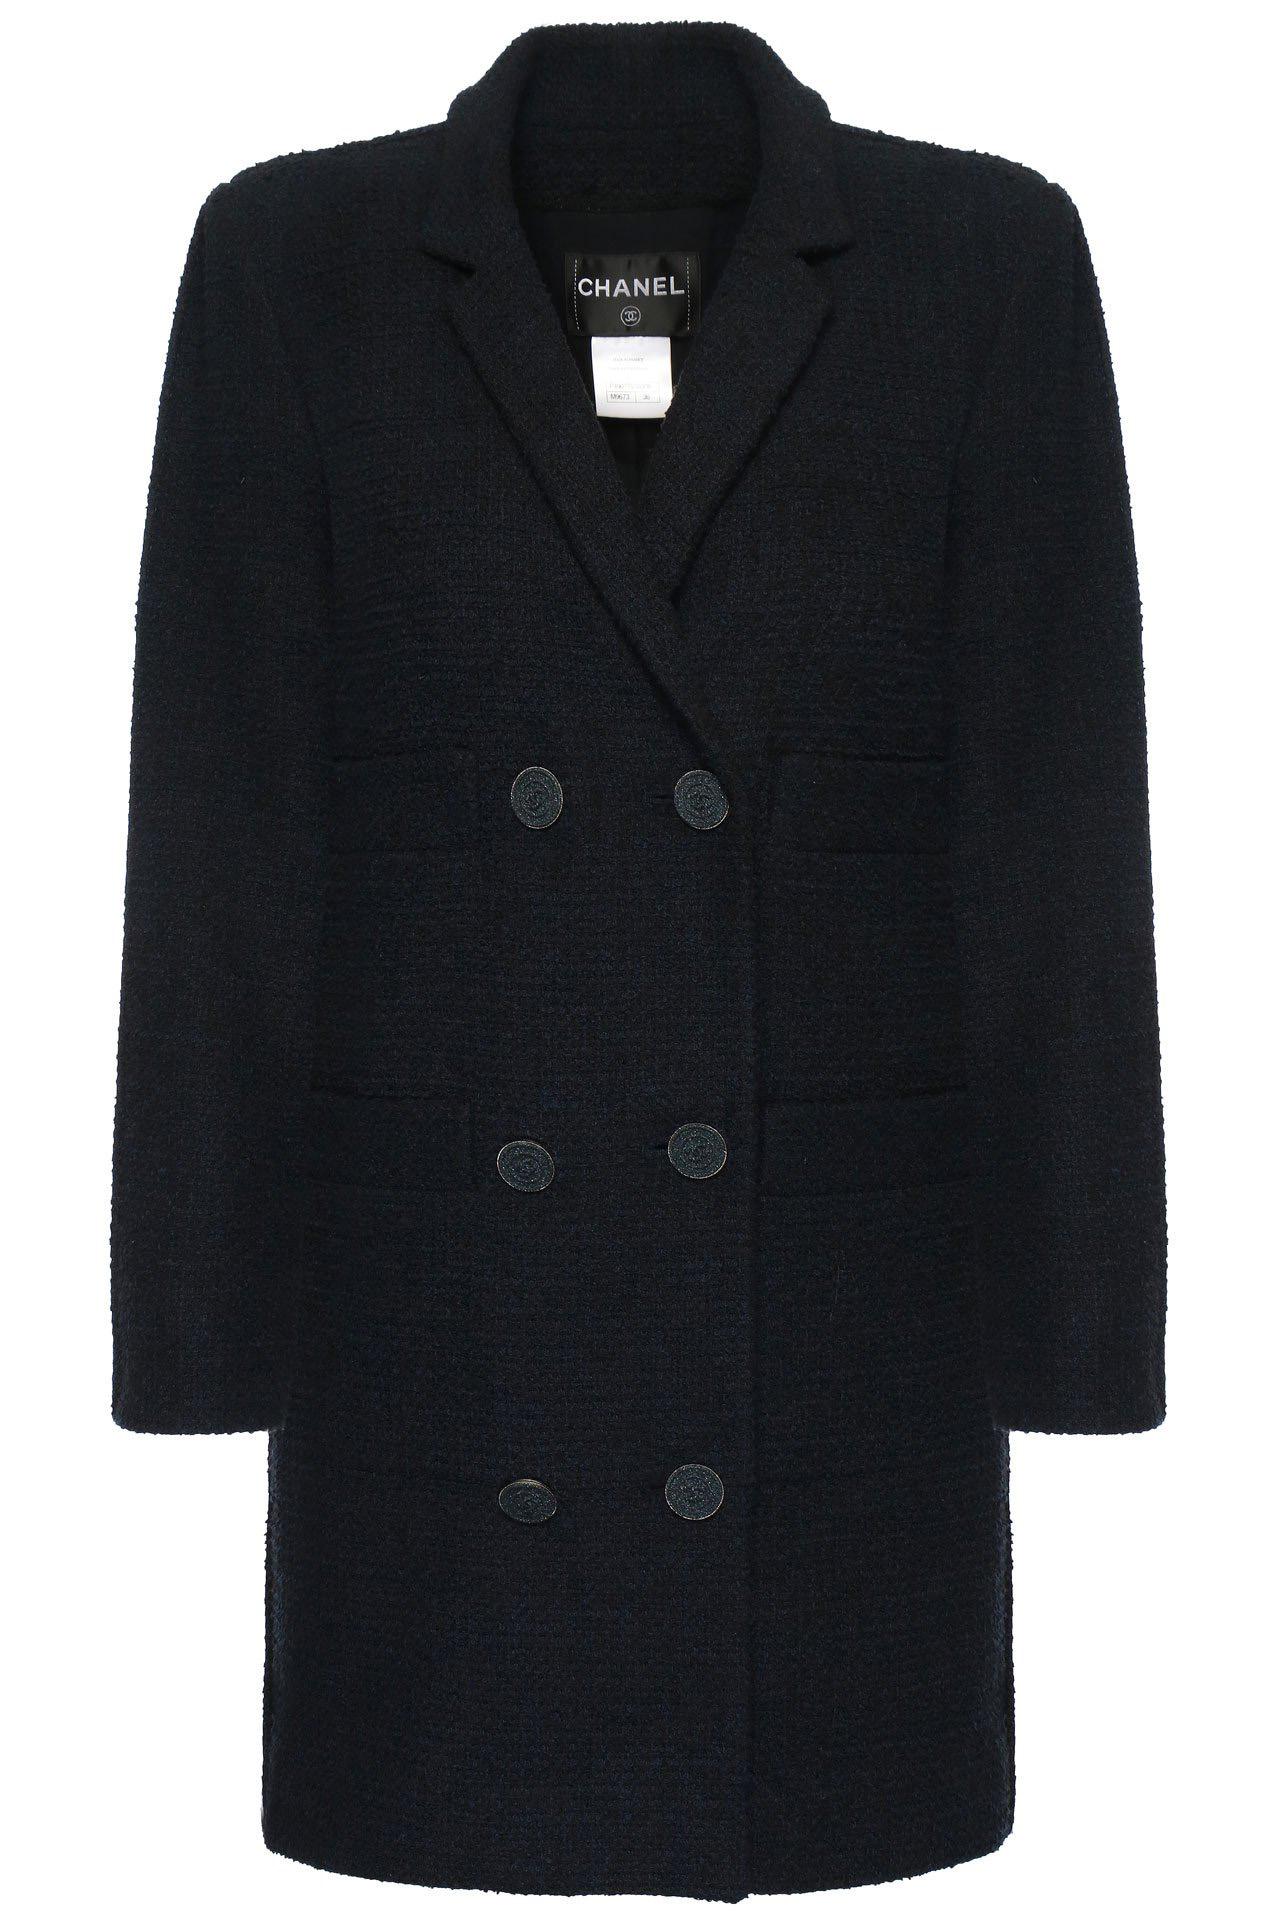 Chanel New CC Knöpfe Tweed Jacke für Damen oder Herren im Angebot